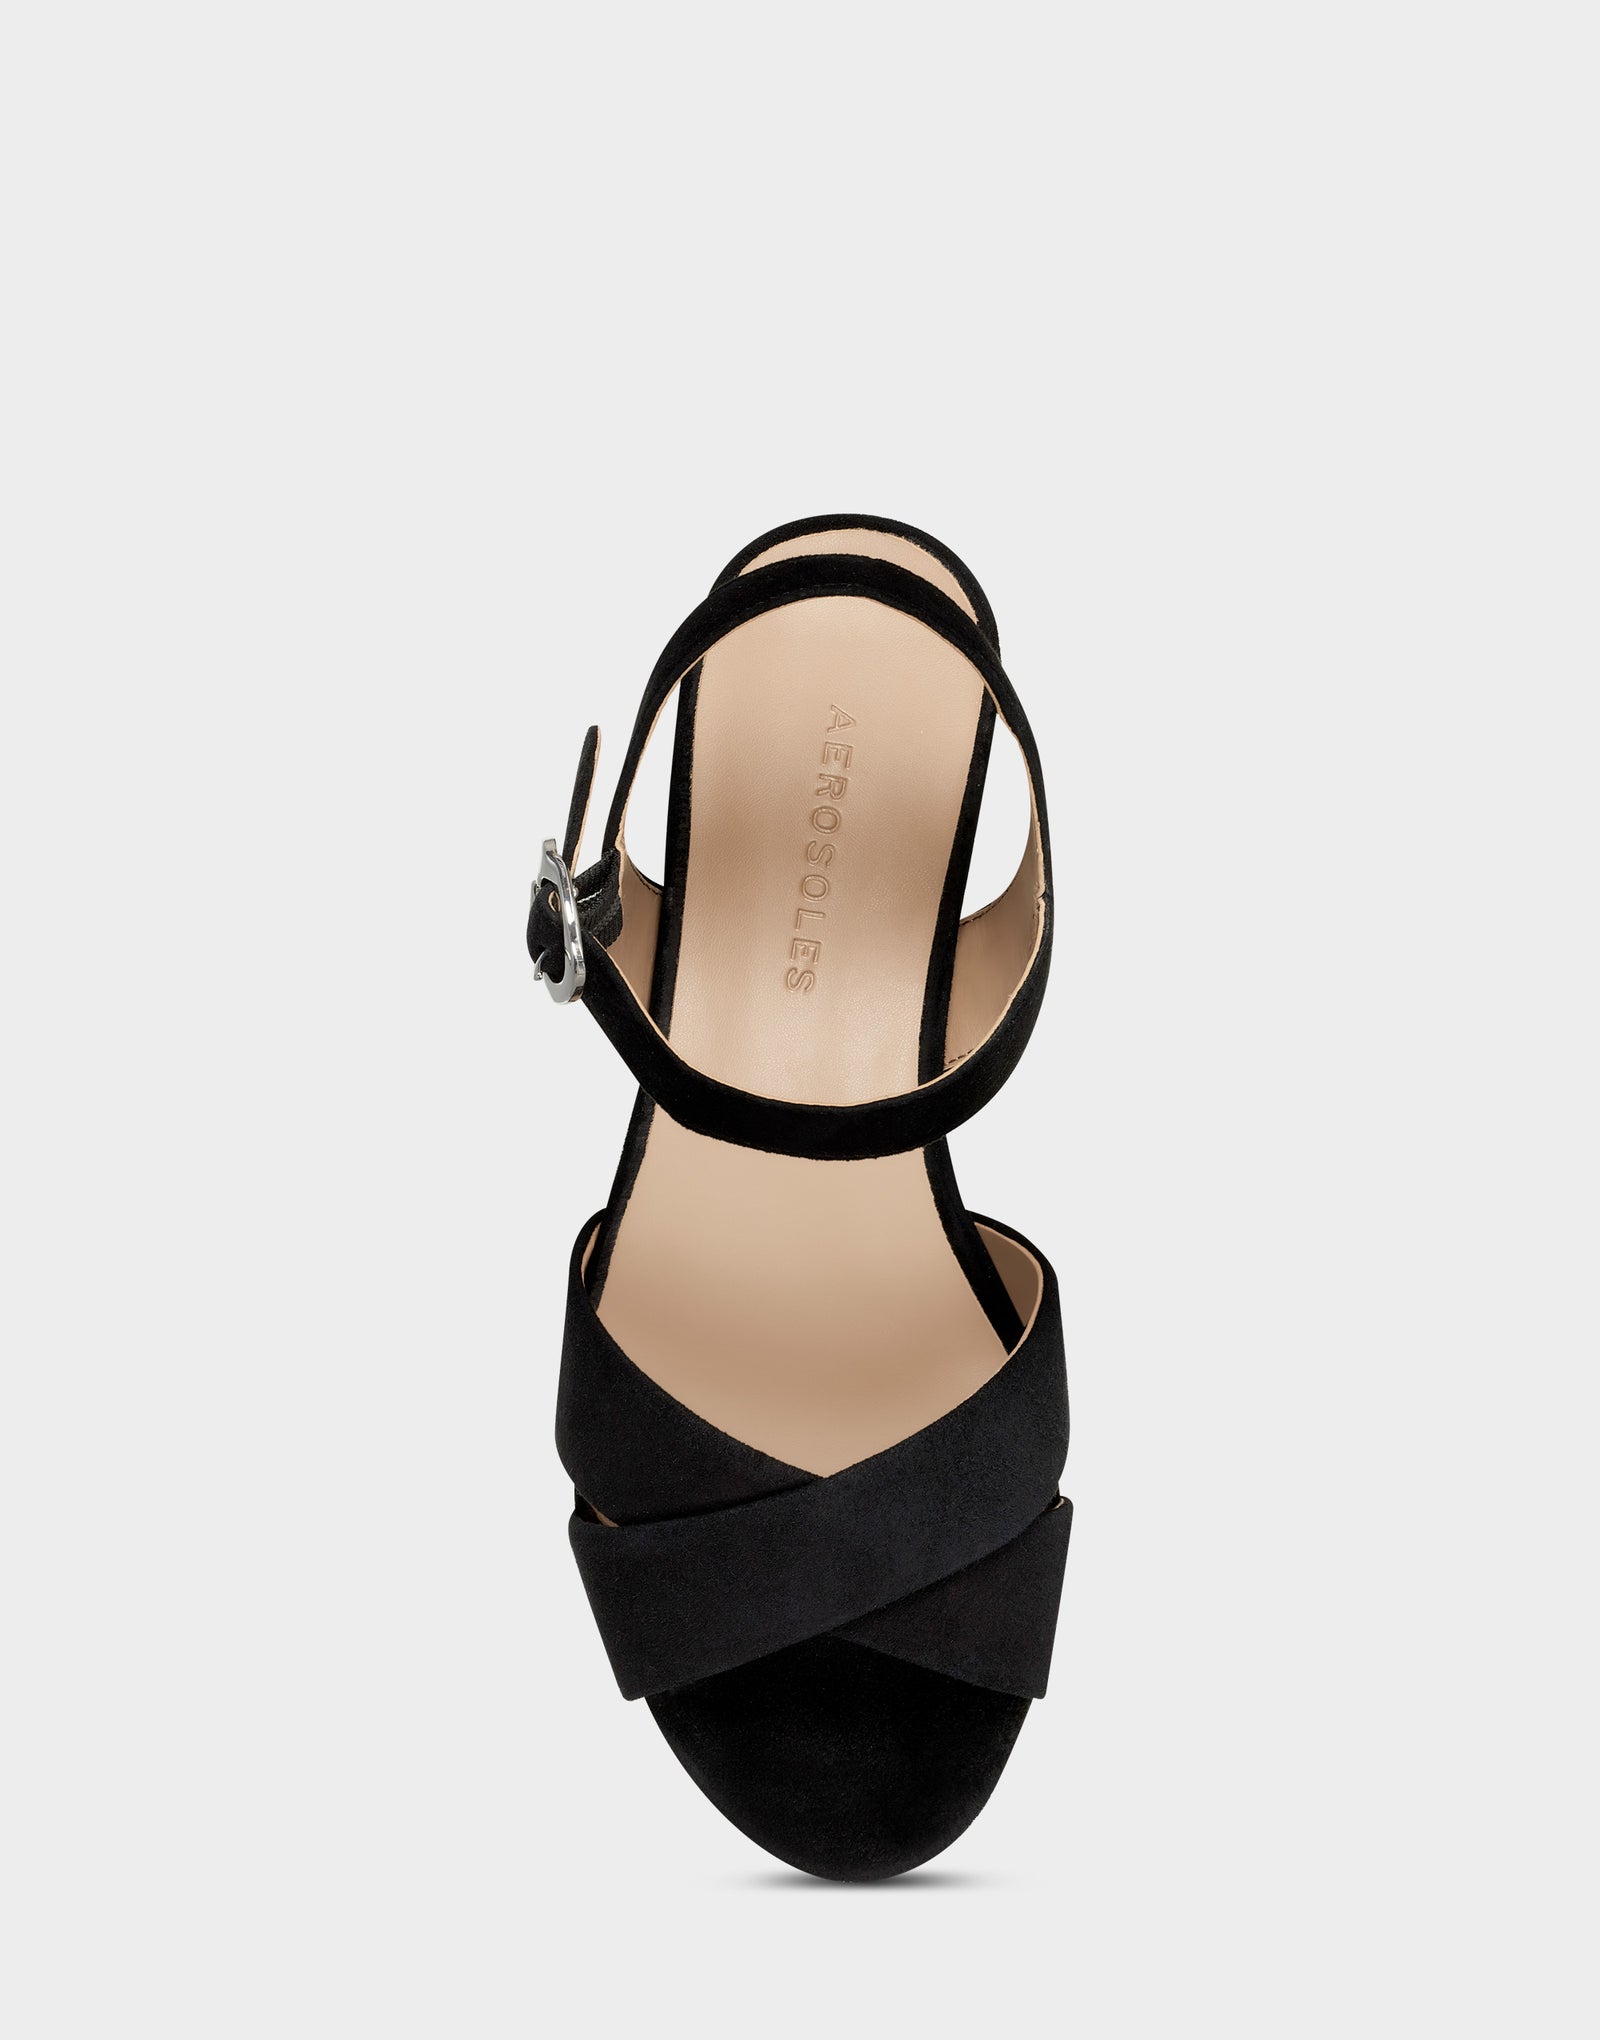 Black Suede Platform Block Heel Sandal with Buckle – Aerosoles